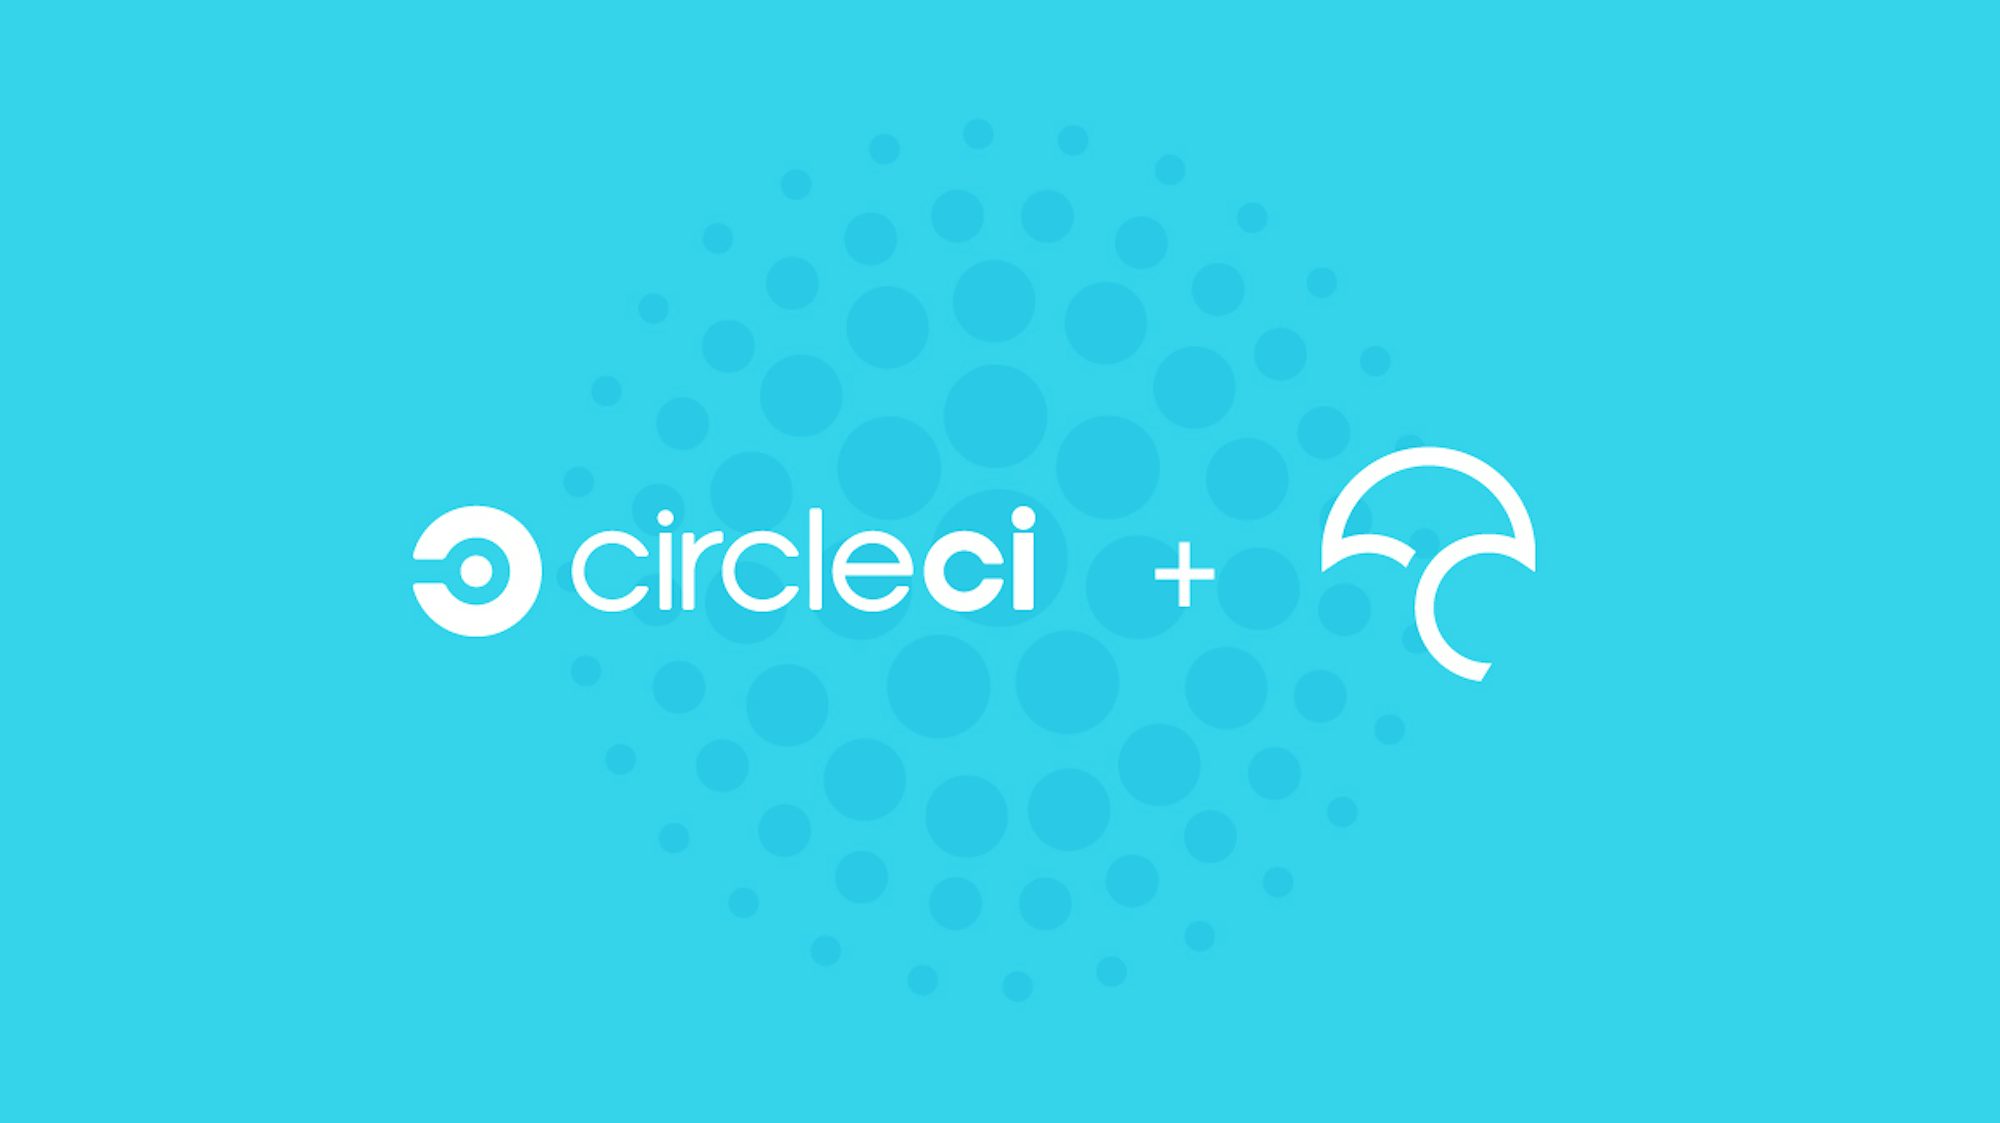 CircleCI+CodeCov.jpg